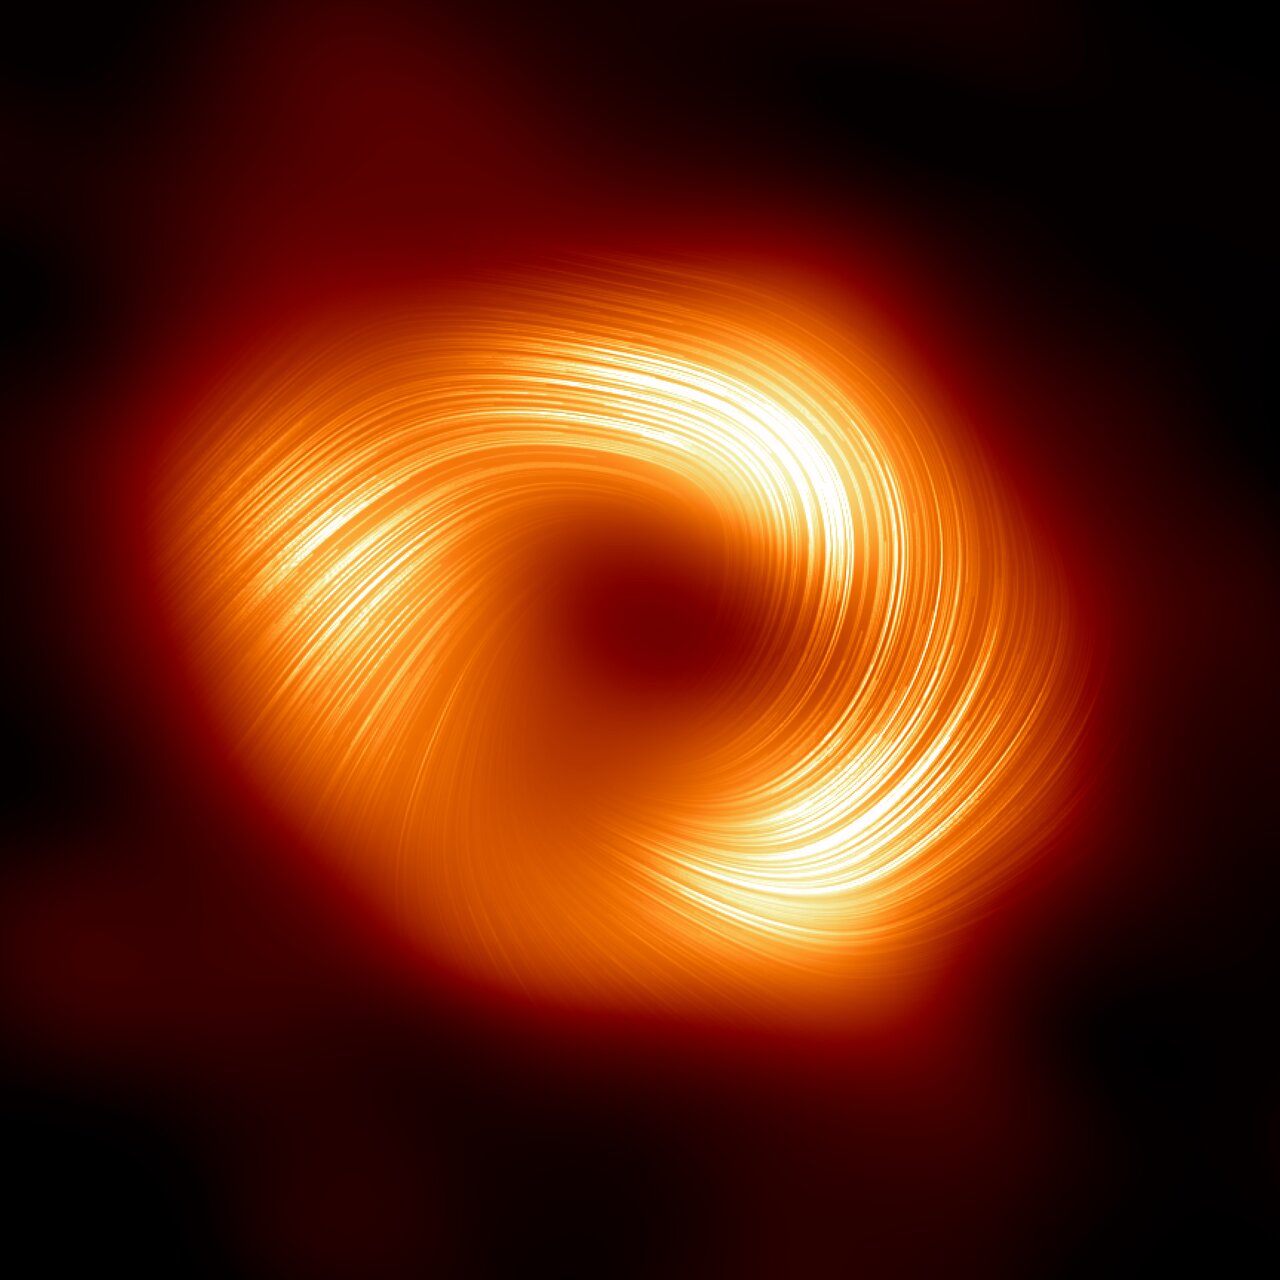 У центральной черной дыры Млечного Пути выявлены сильные магнитные поля